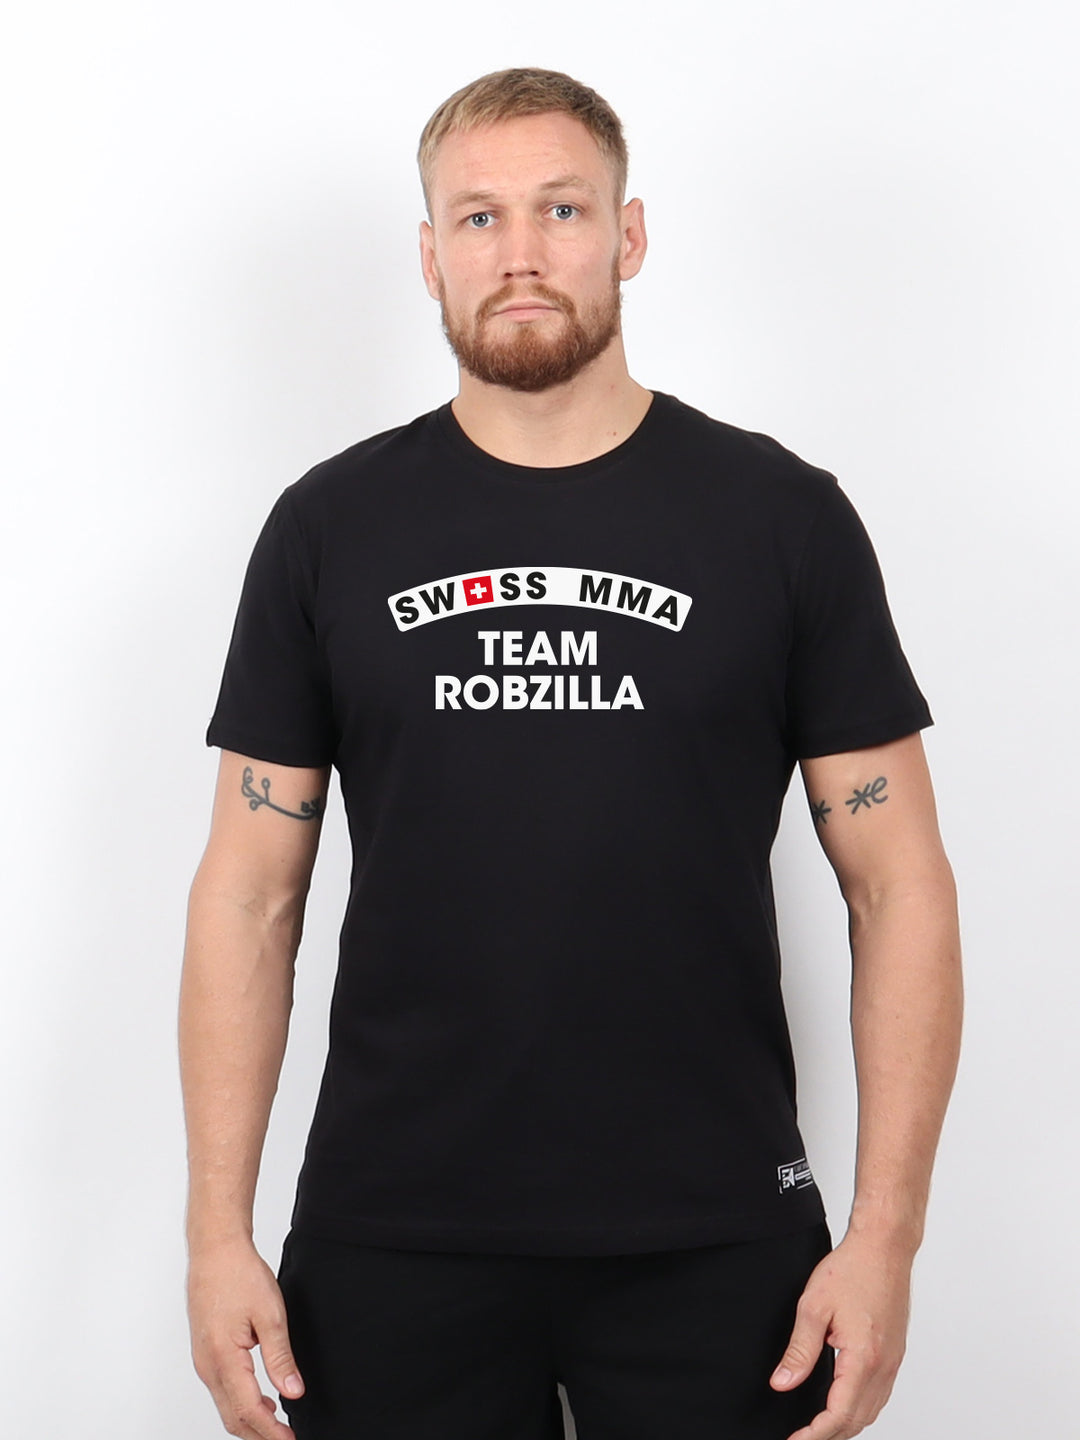 FA x TEAM ROBZILLA - SWISS MMA - T-Shirt